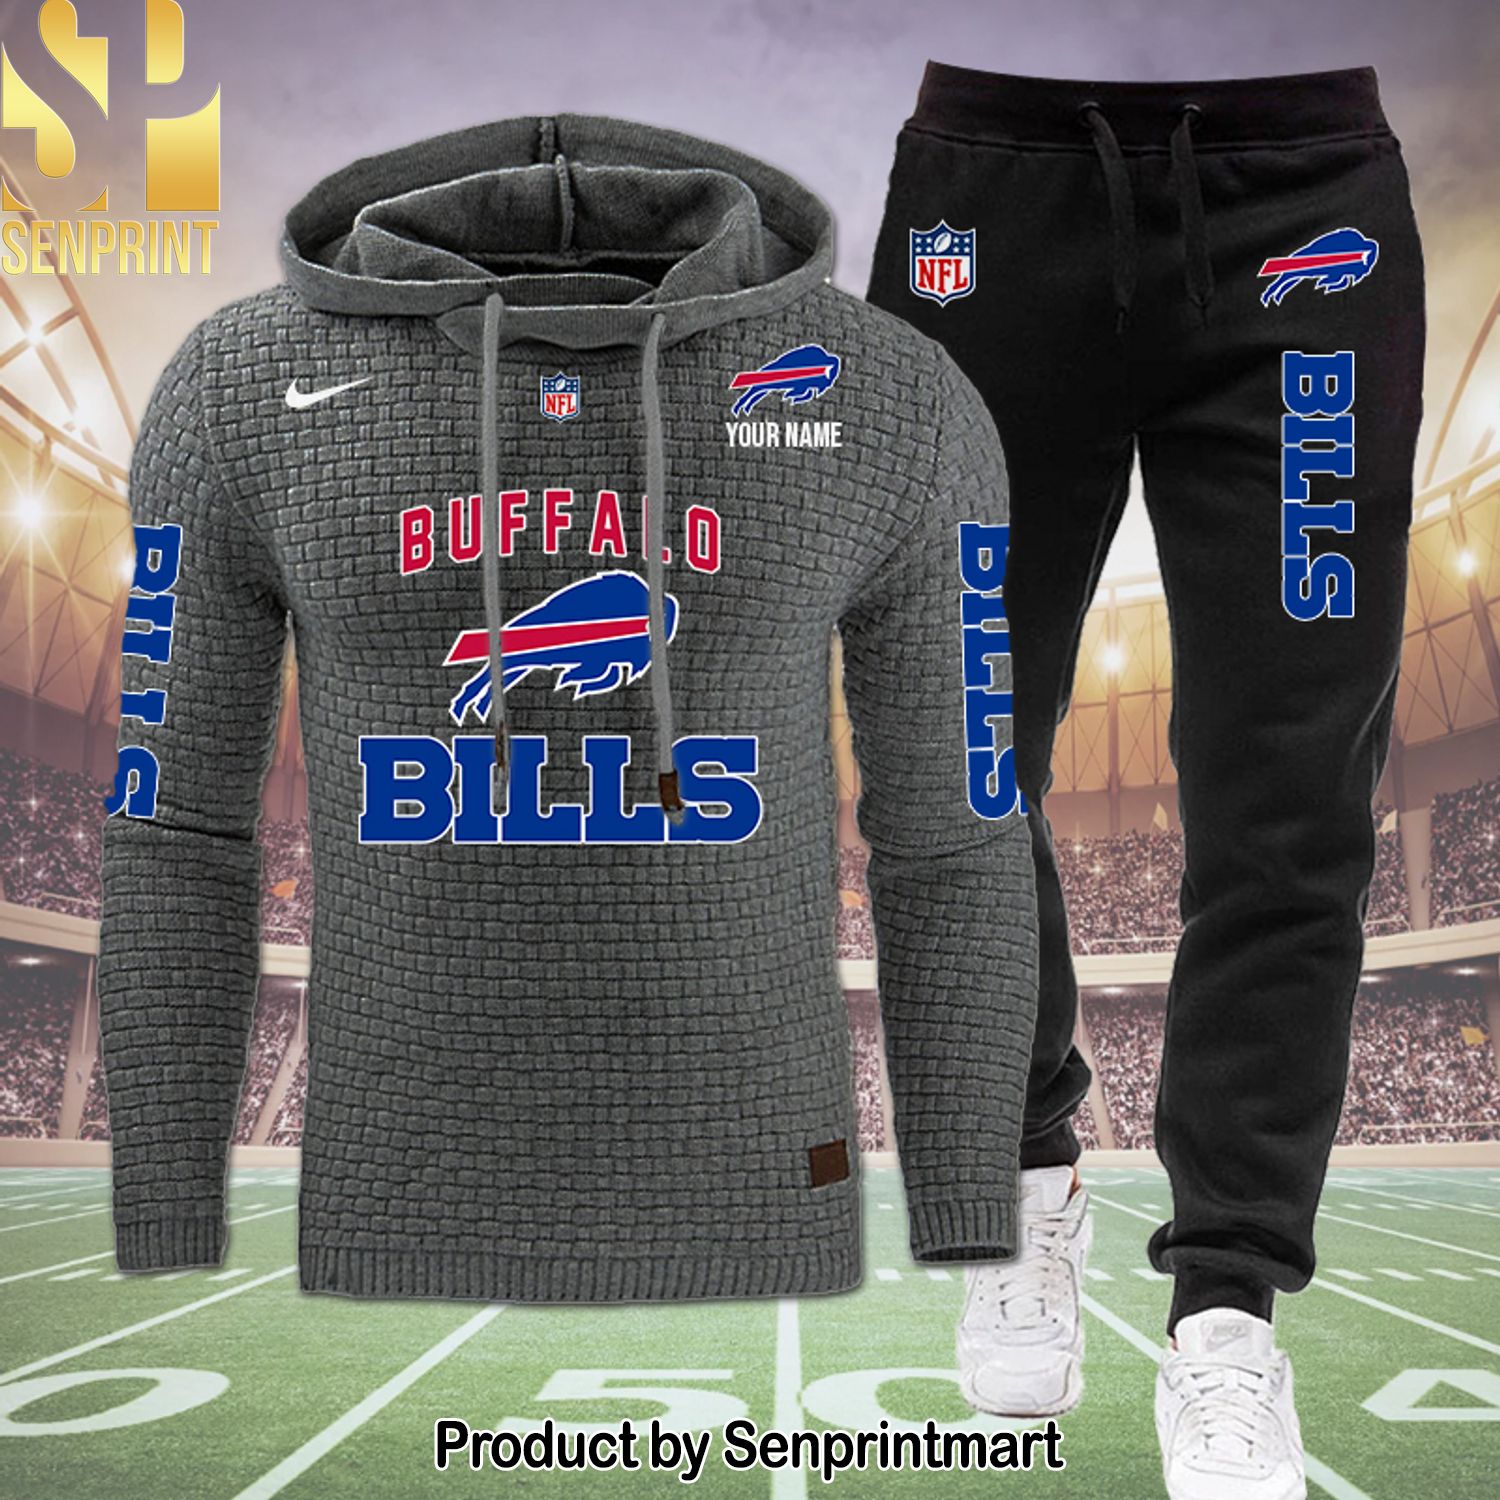 Buffalo Bills Hypebeast Fashion Shirt and Pants